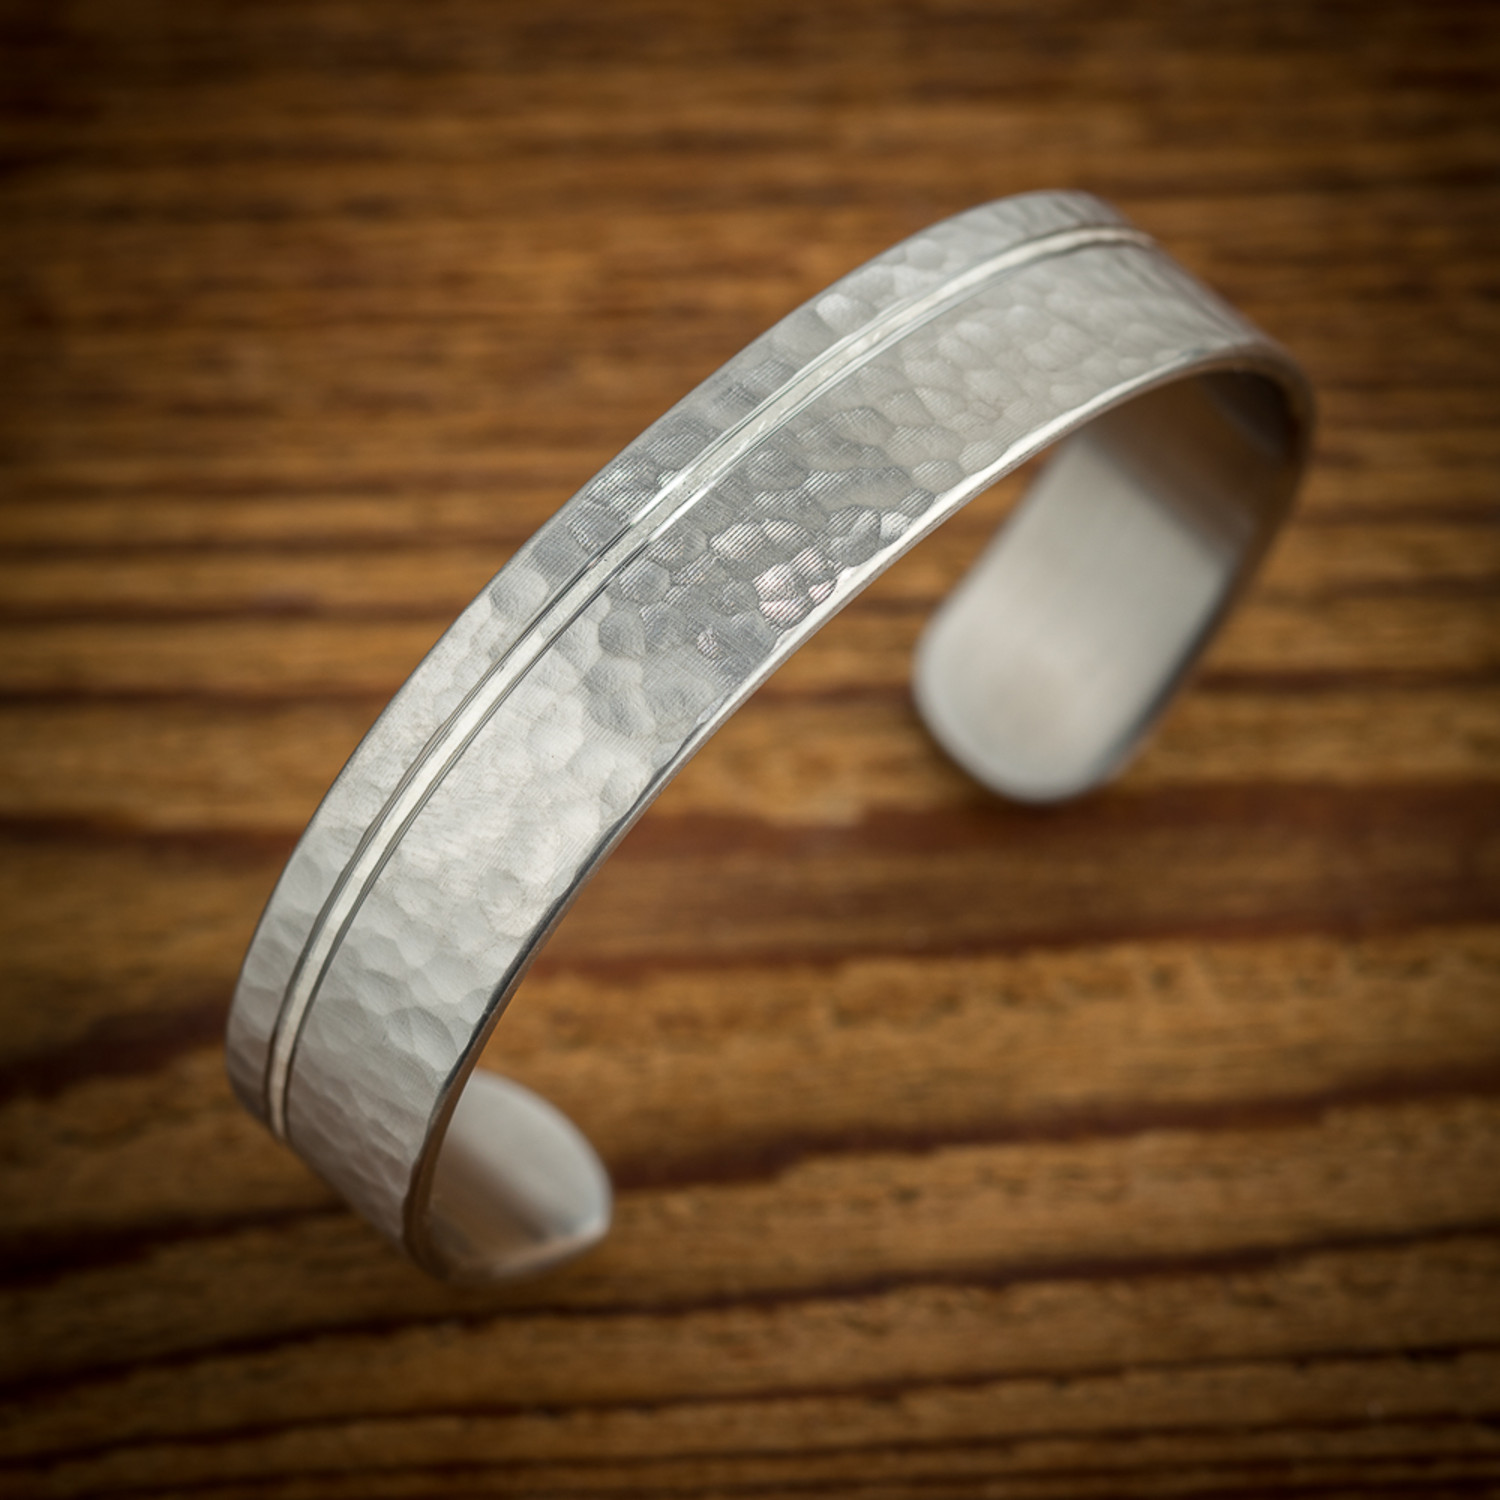 Steel & Silver Hammered Cuff Bracelet (Medium // 6-7" Wrist) - Spexton